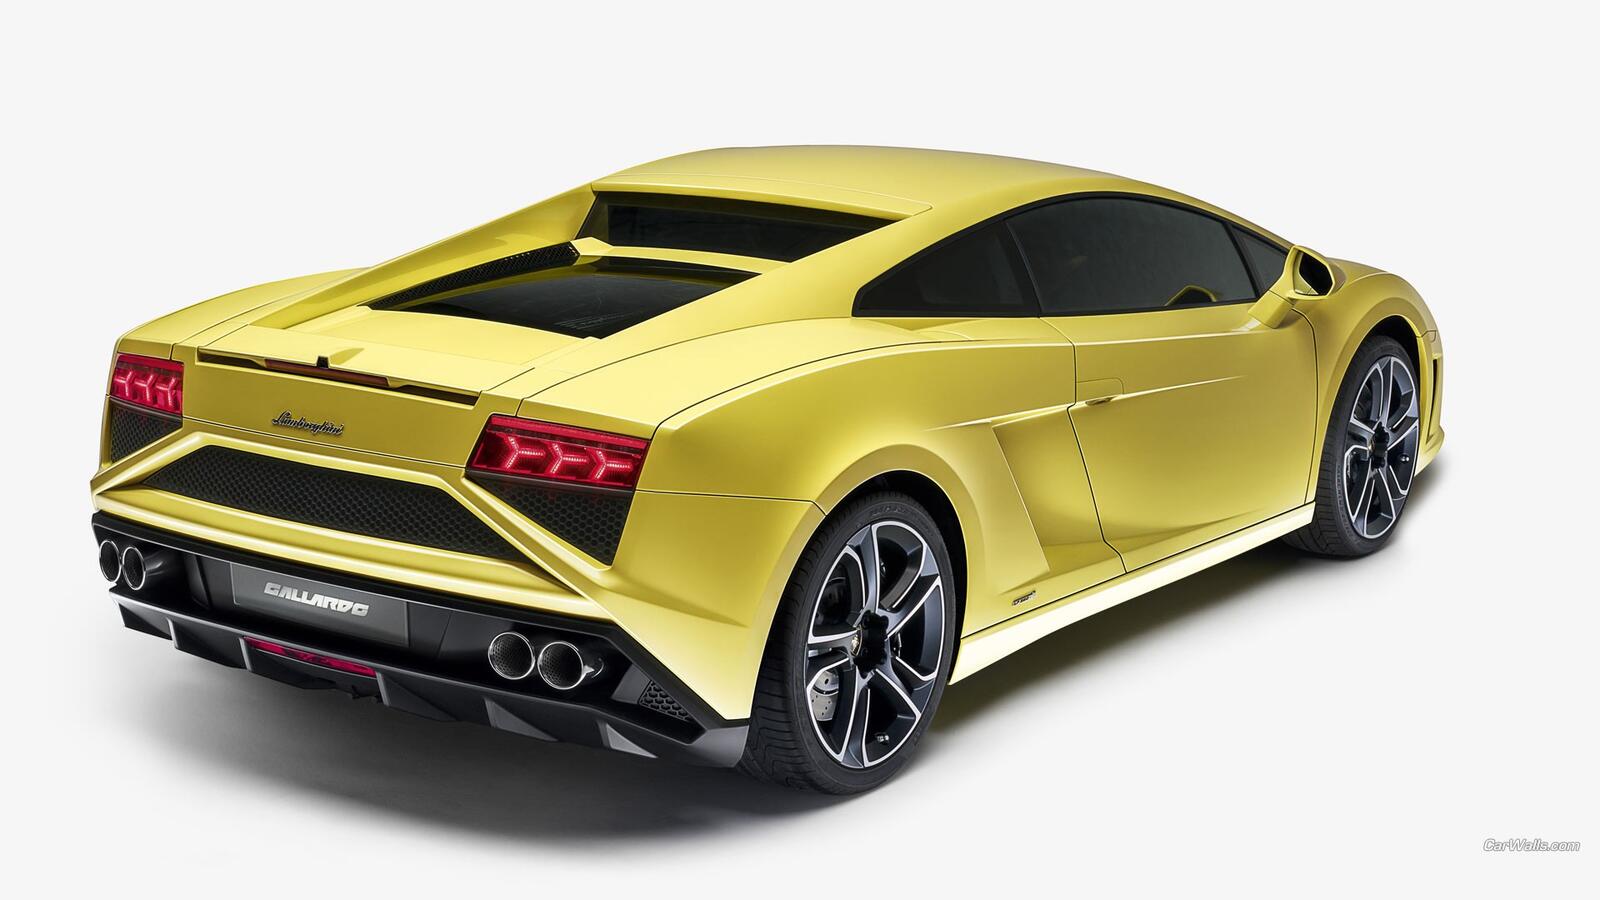 Free photo Lamborghini Gallardo in gold color